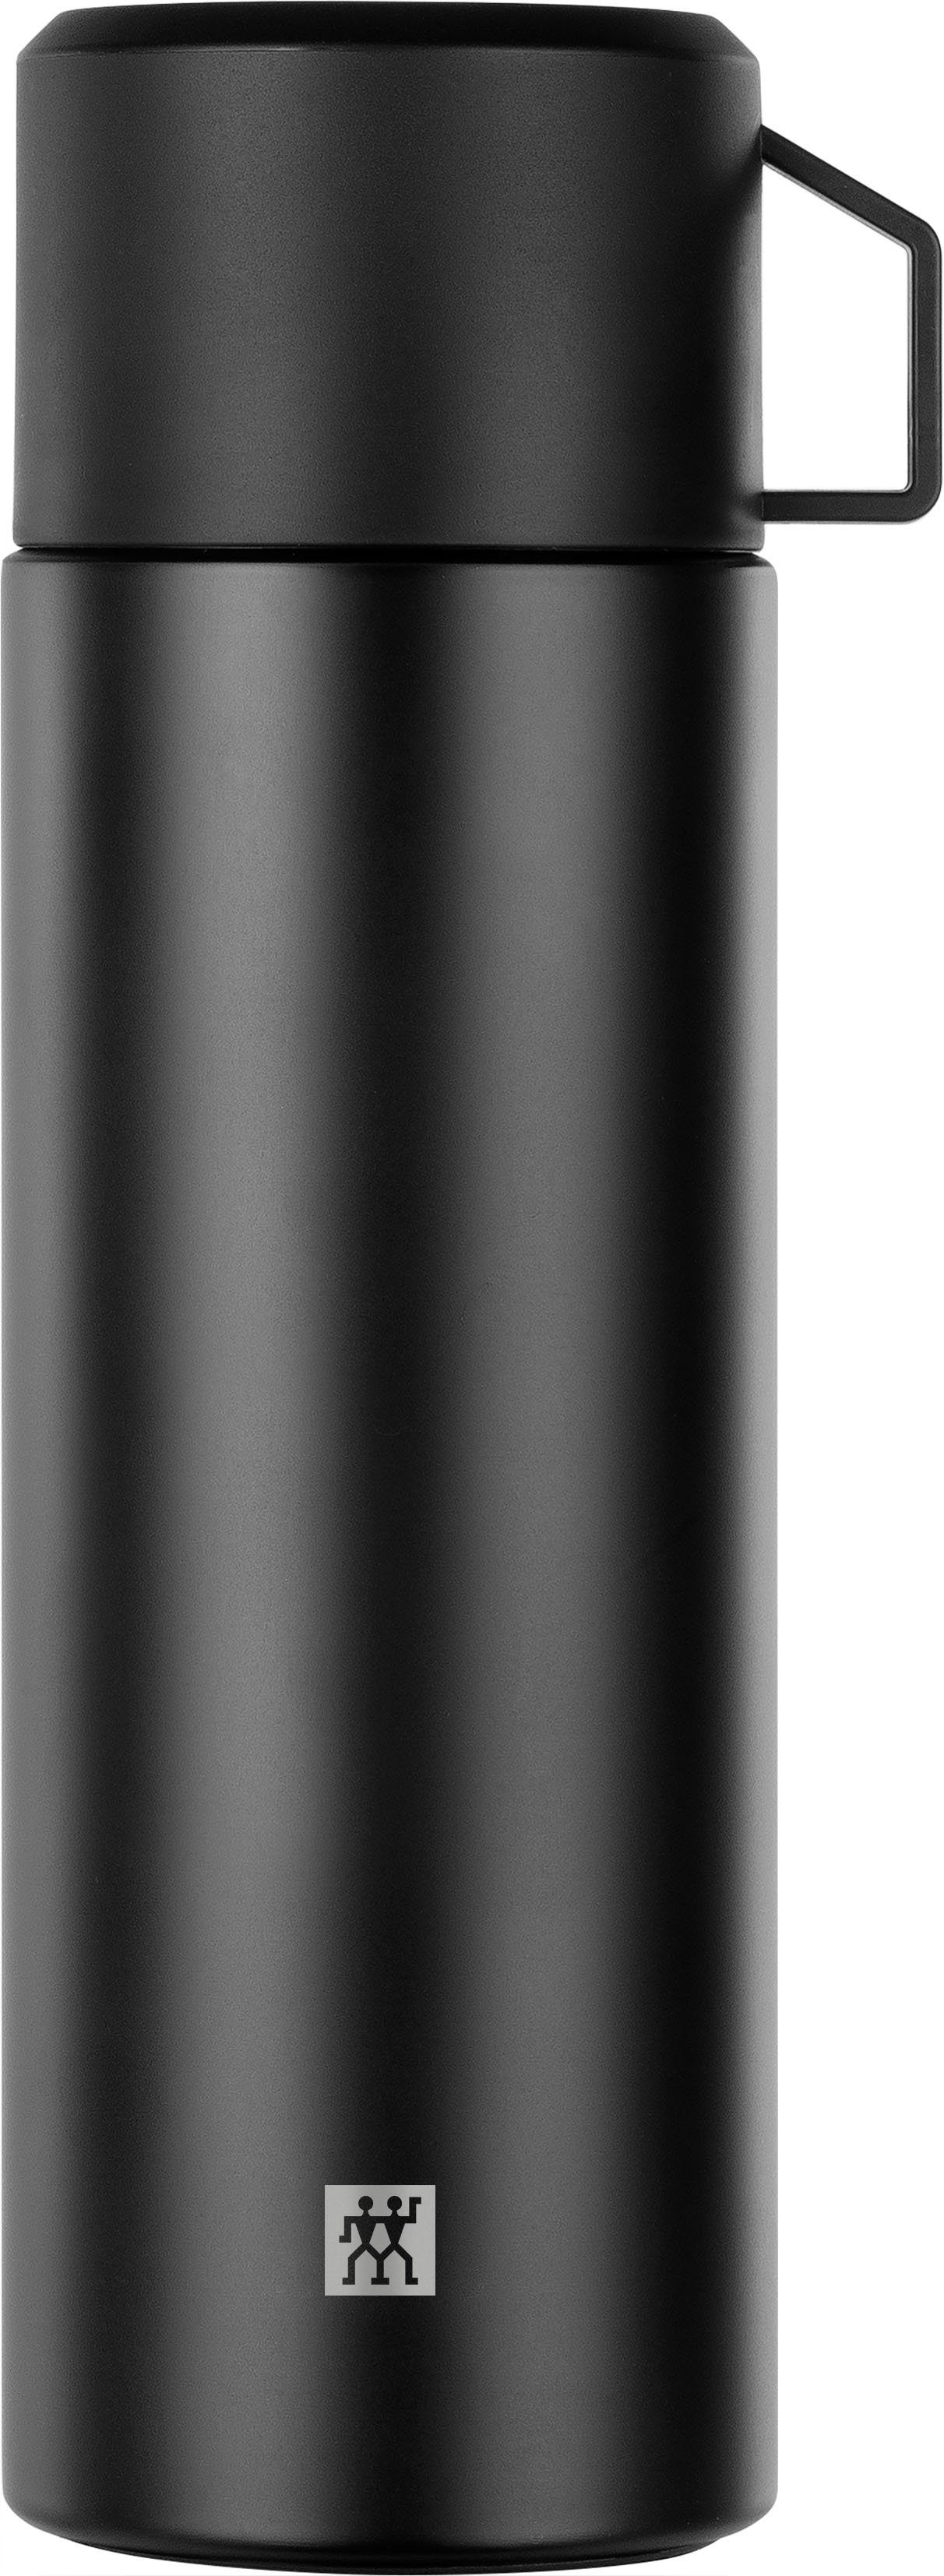 Zwilling Isolierflasche THERMO, ideale Isolierflasche für Ausflüge, integrierte Tasse, 1 Liter